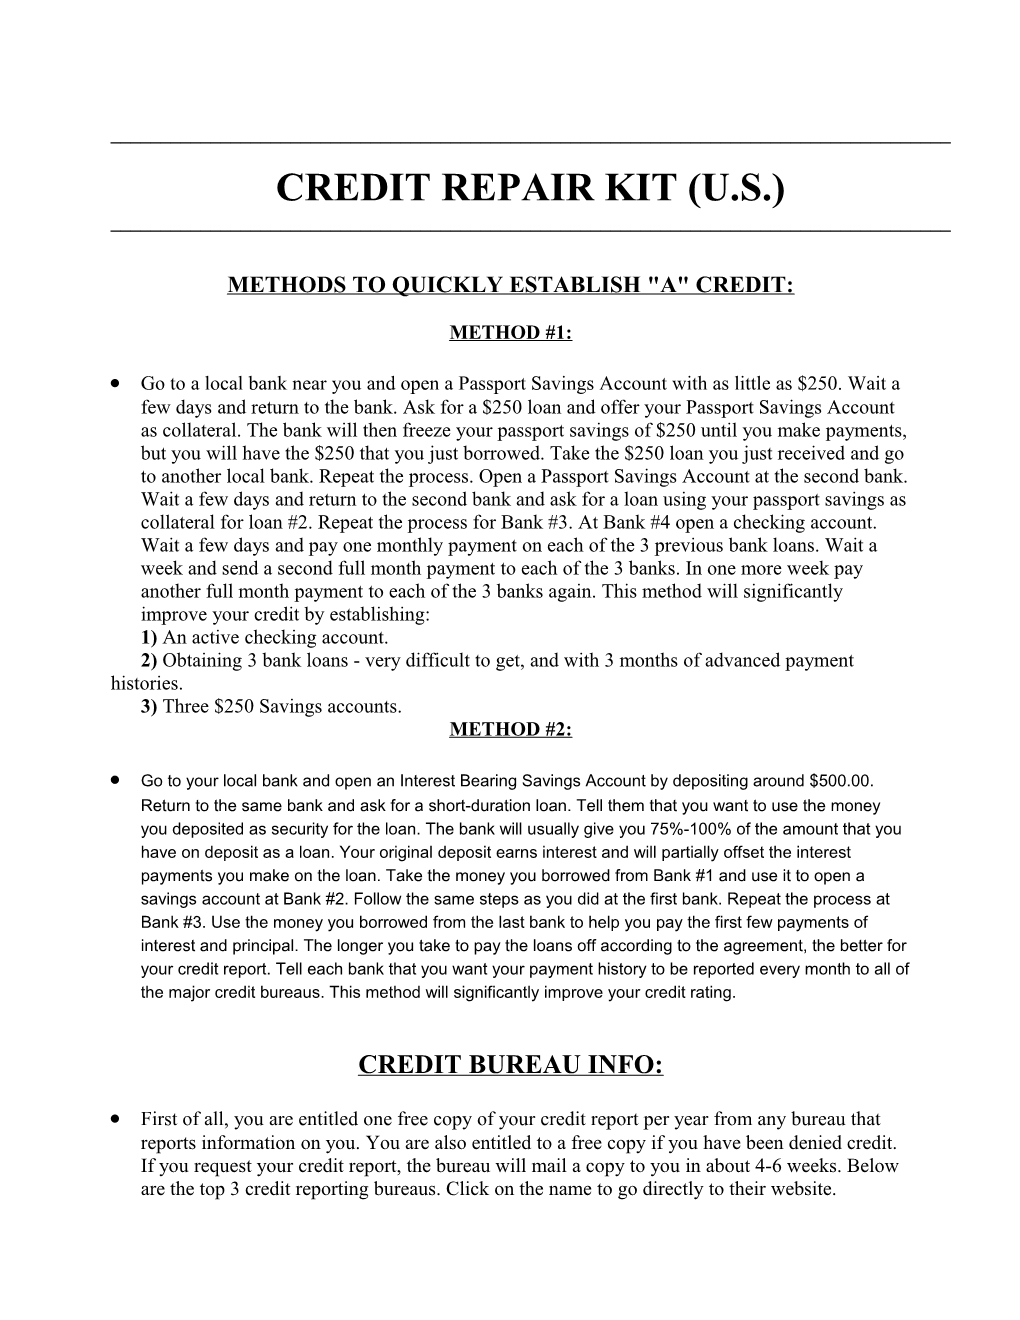 Credit Repair Kit - U.S